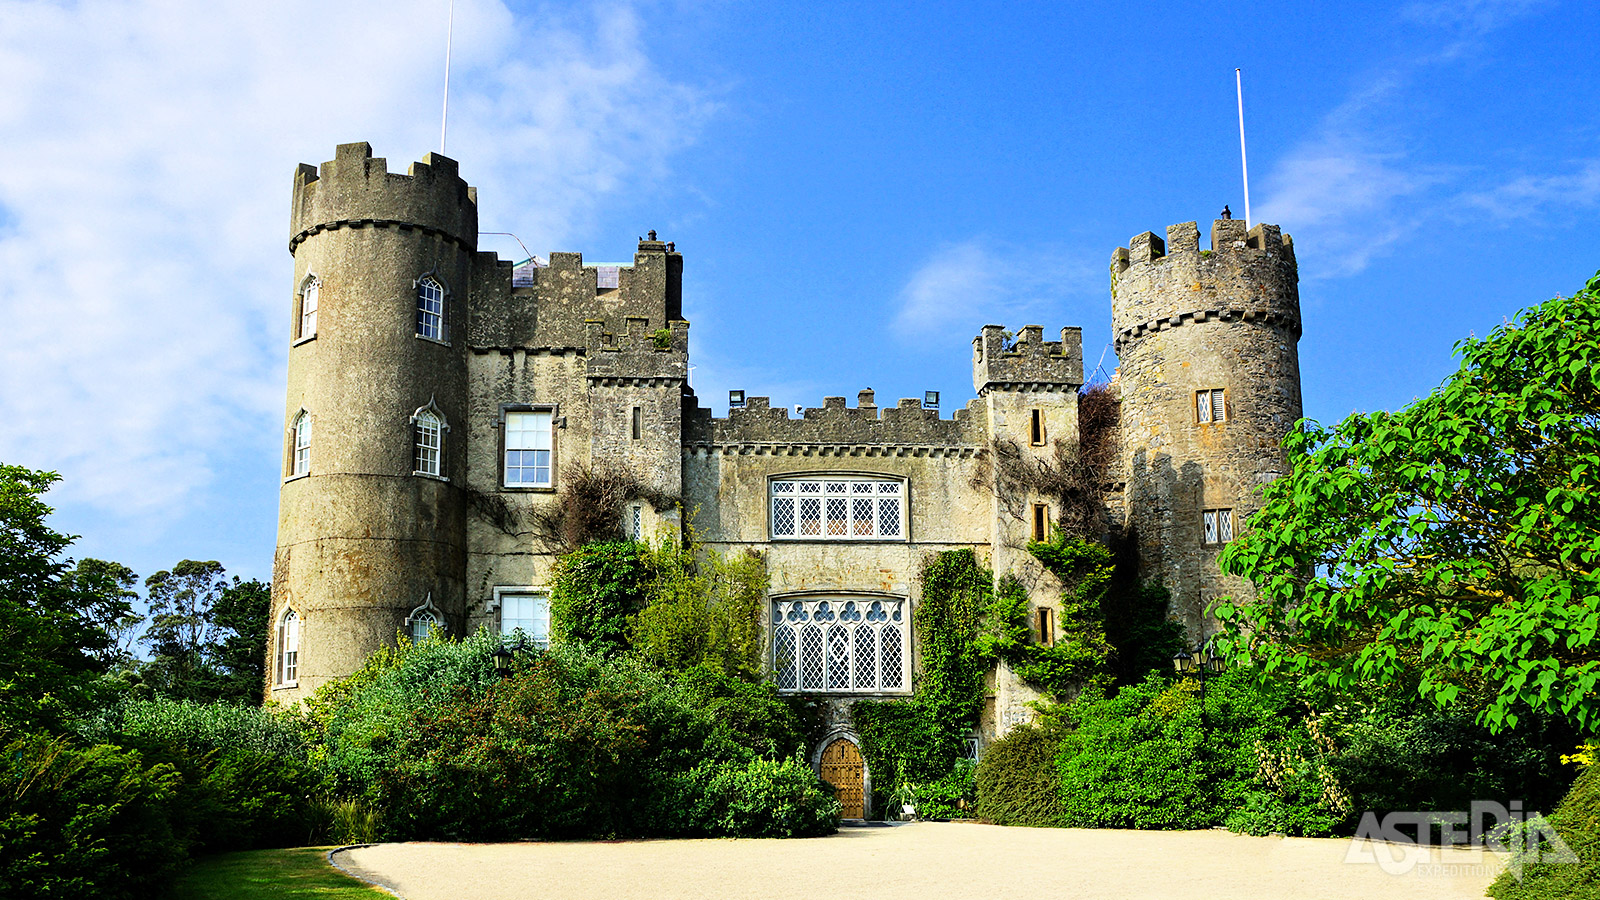 Het spectaculaire Malahide Castle was gedurende 800 jaar zowel een fort als de privéwoning van de familie Talbot